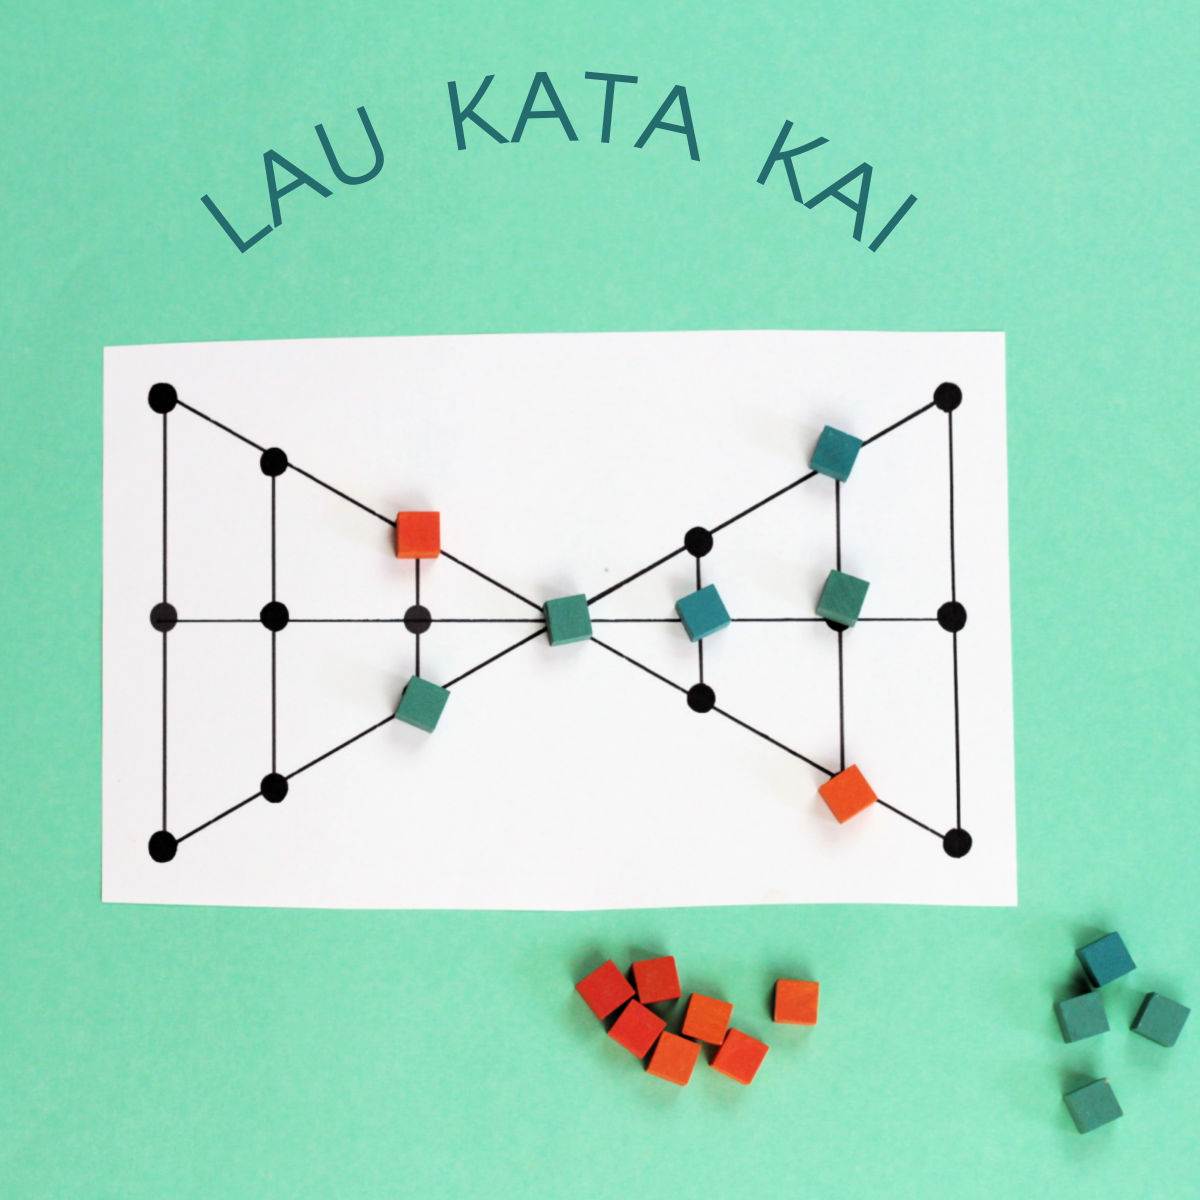 Lau Kata Kati: un juego de estrategia tradicional de la India